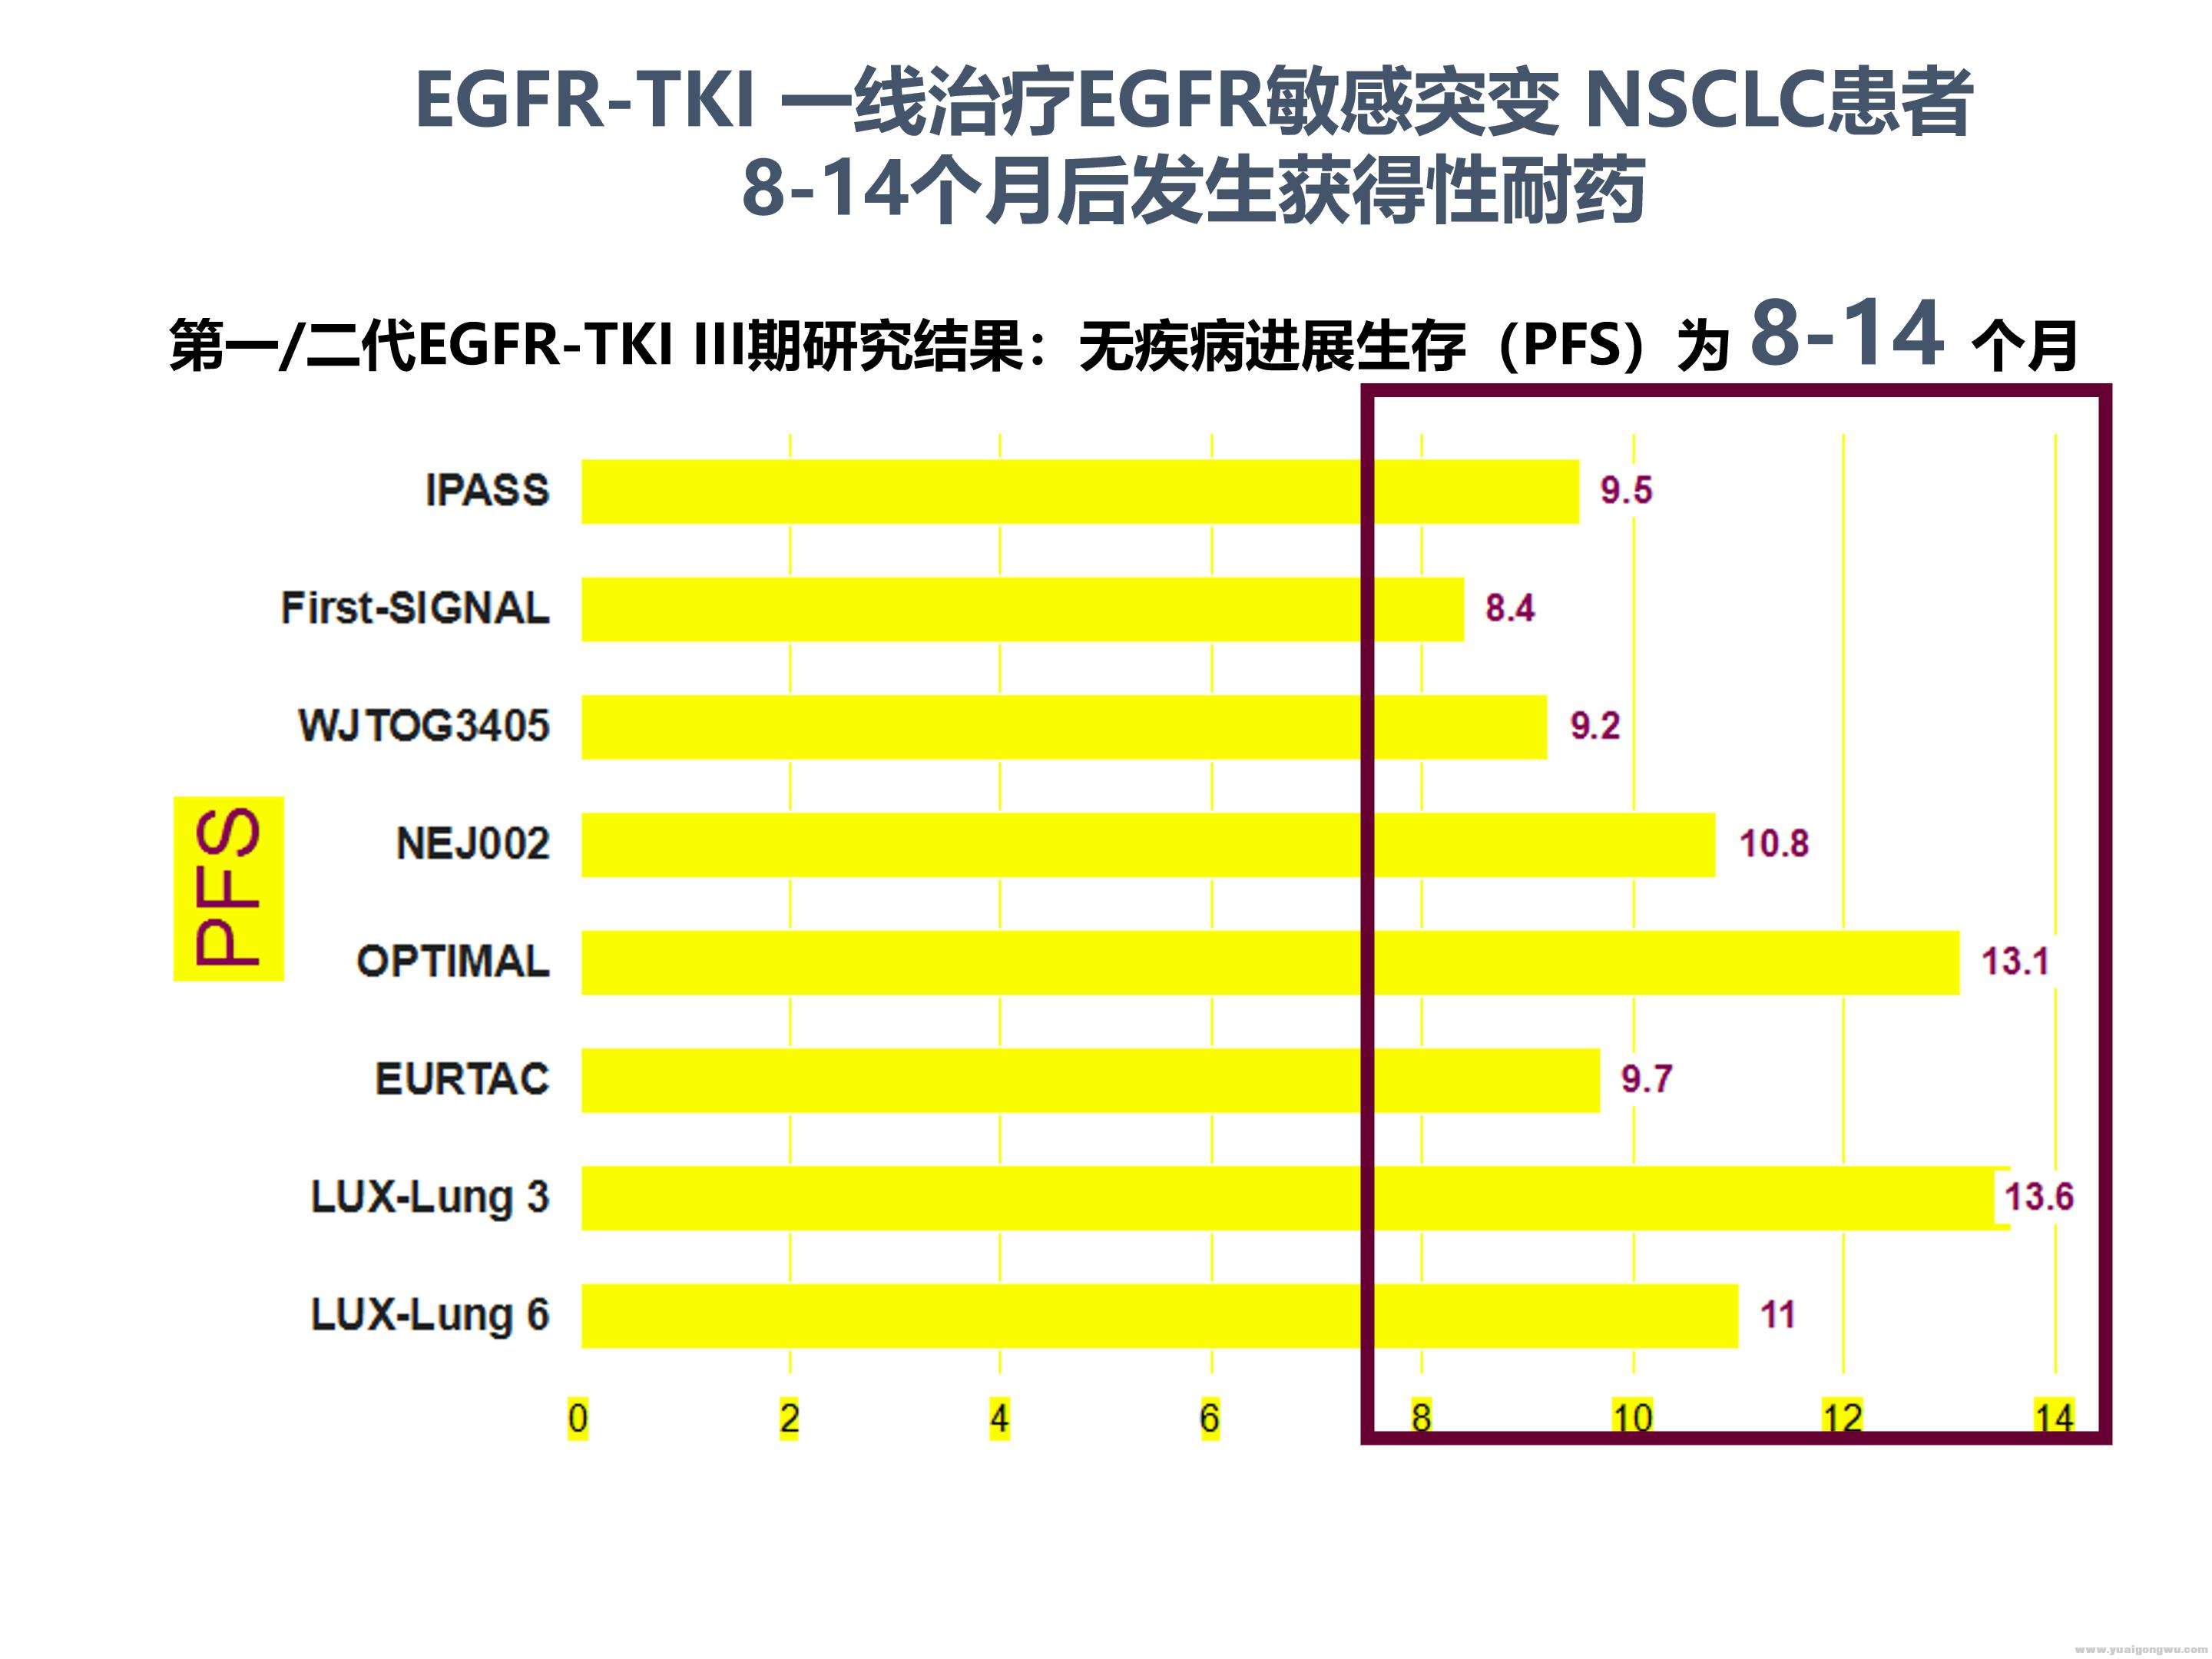 EGFR突变靶向治疗全程管理_07.jpg